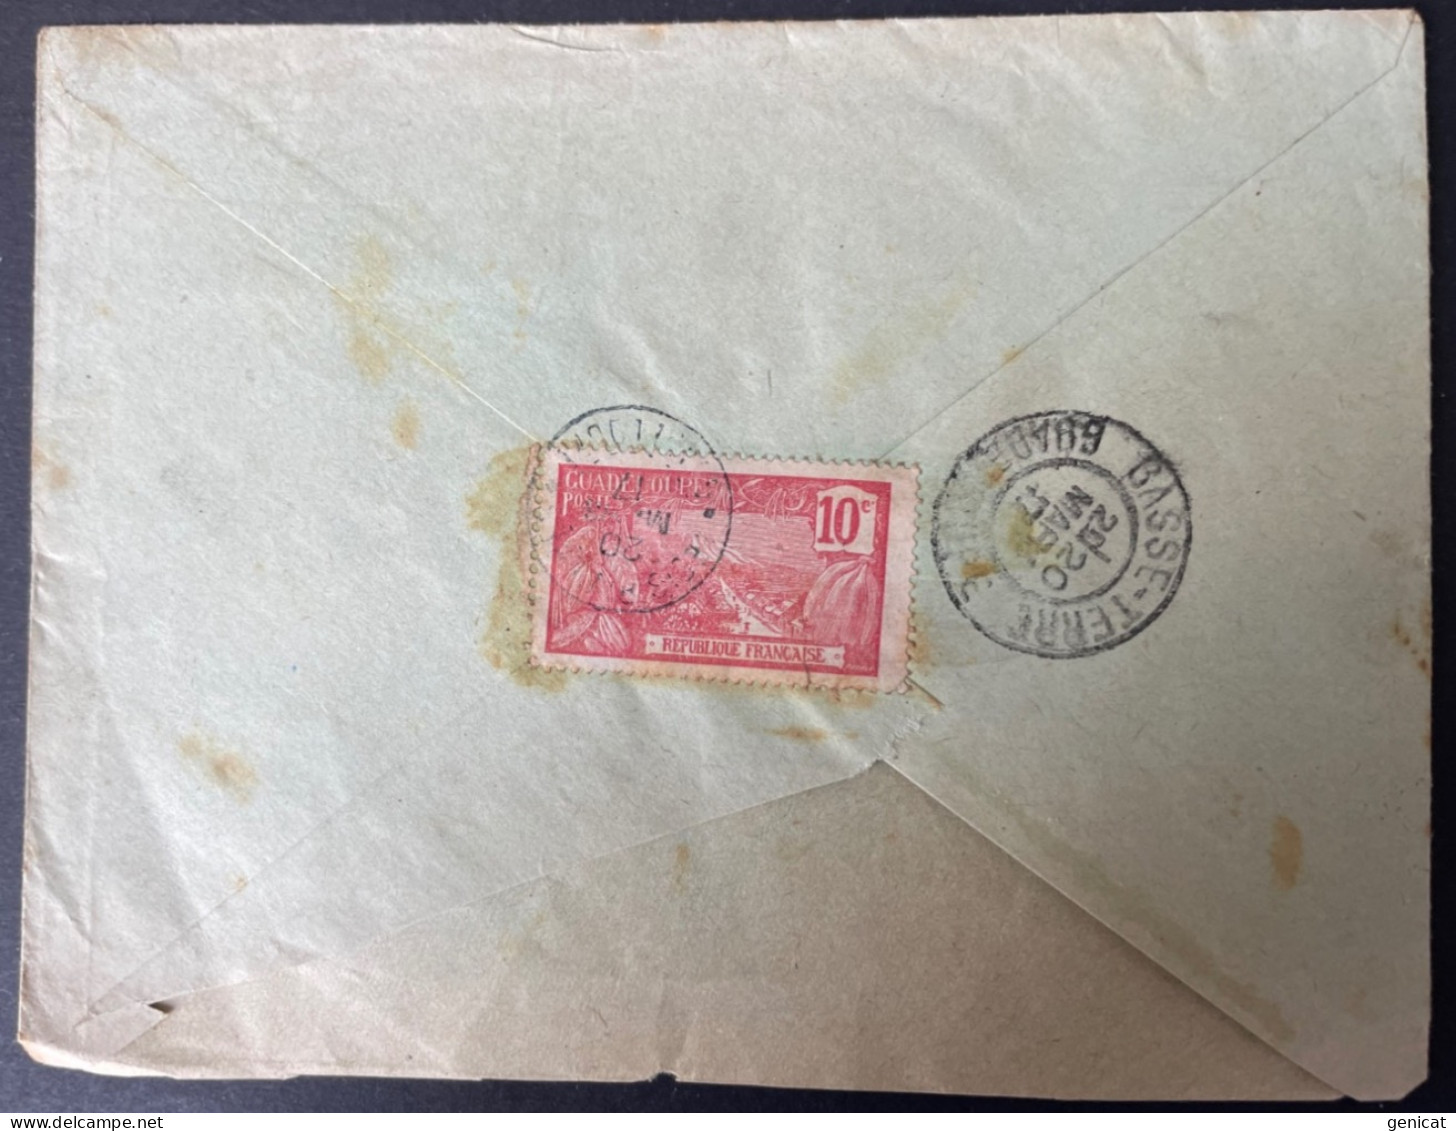 Guadeloupe Lettre De Trois Rivières 1917 Taxe A L'Arrivée Avec Griffe Affranchissement Insuffisant Timbre Au Verso - Covers & Documents